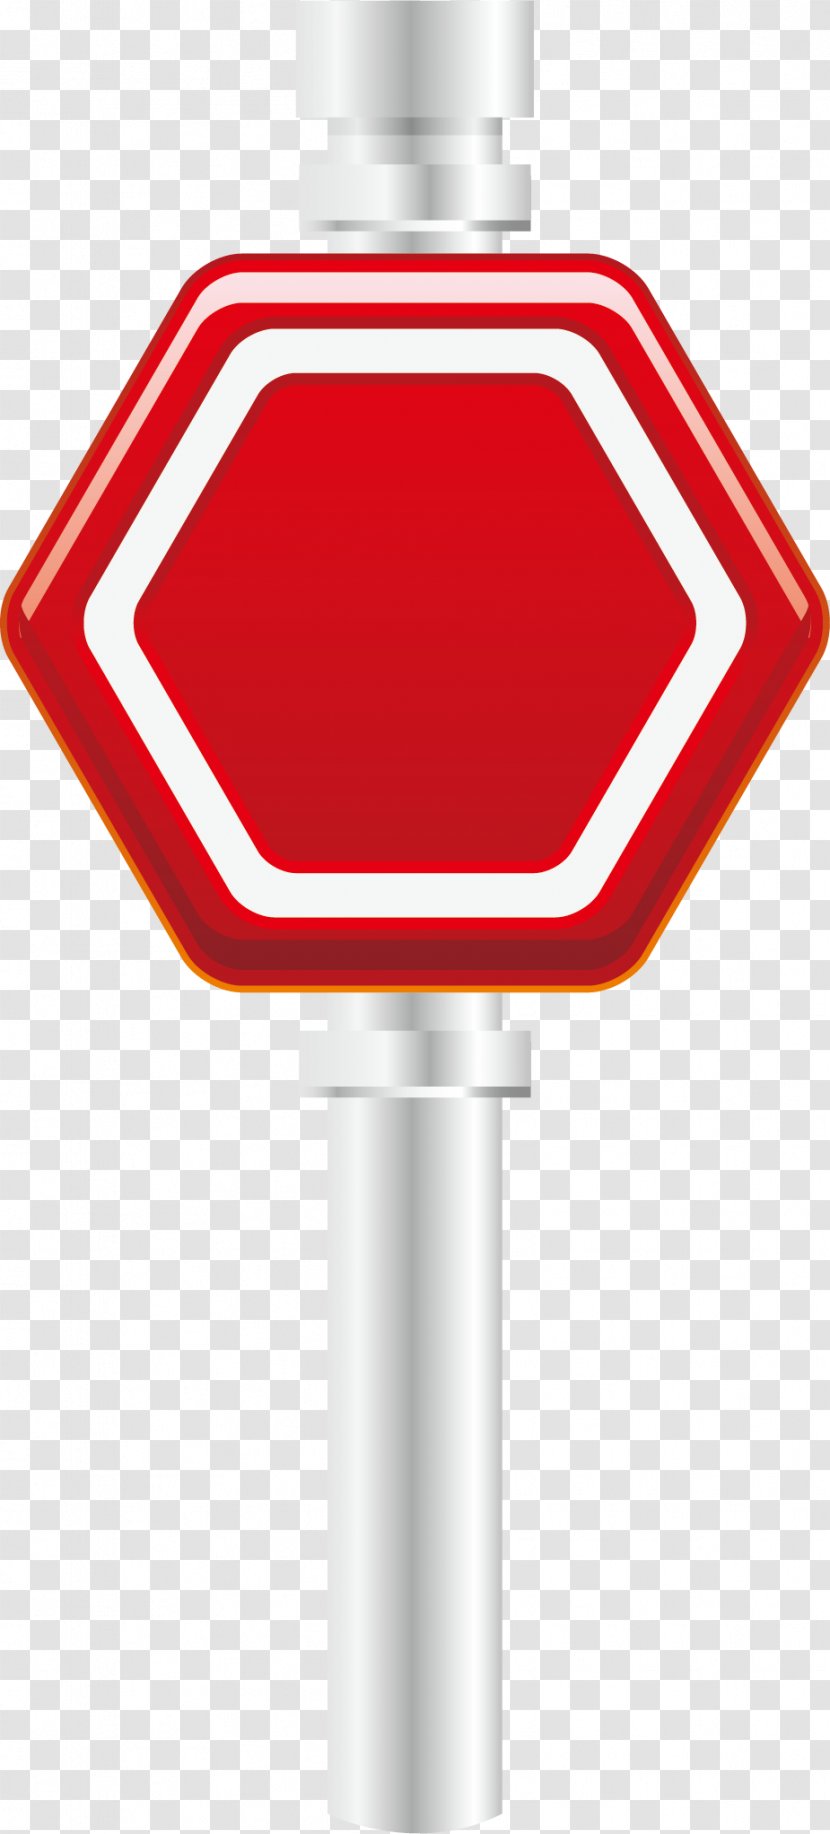 Light Traffic Sign Illustration - Red Position Flag Element Transparent PNG